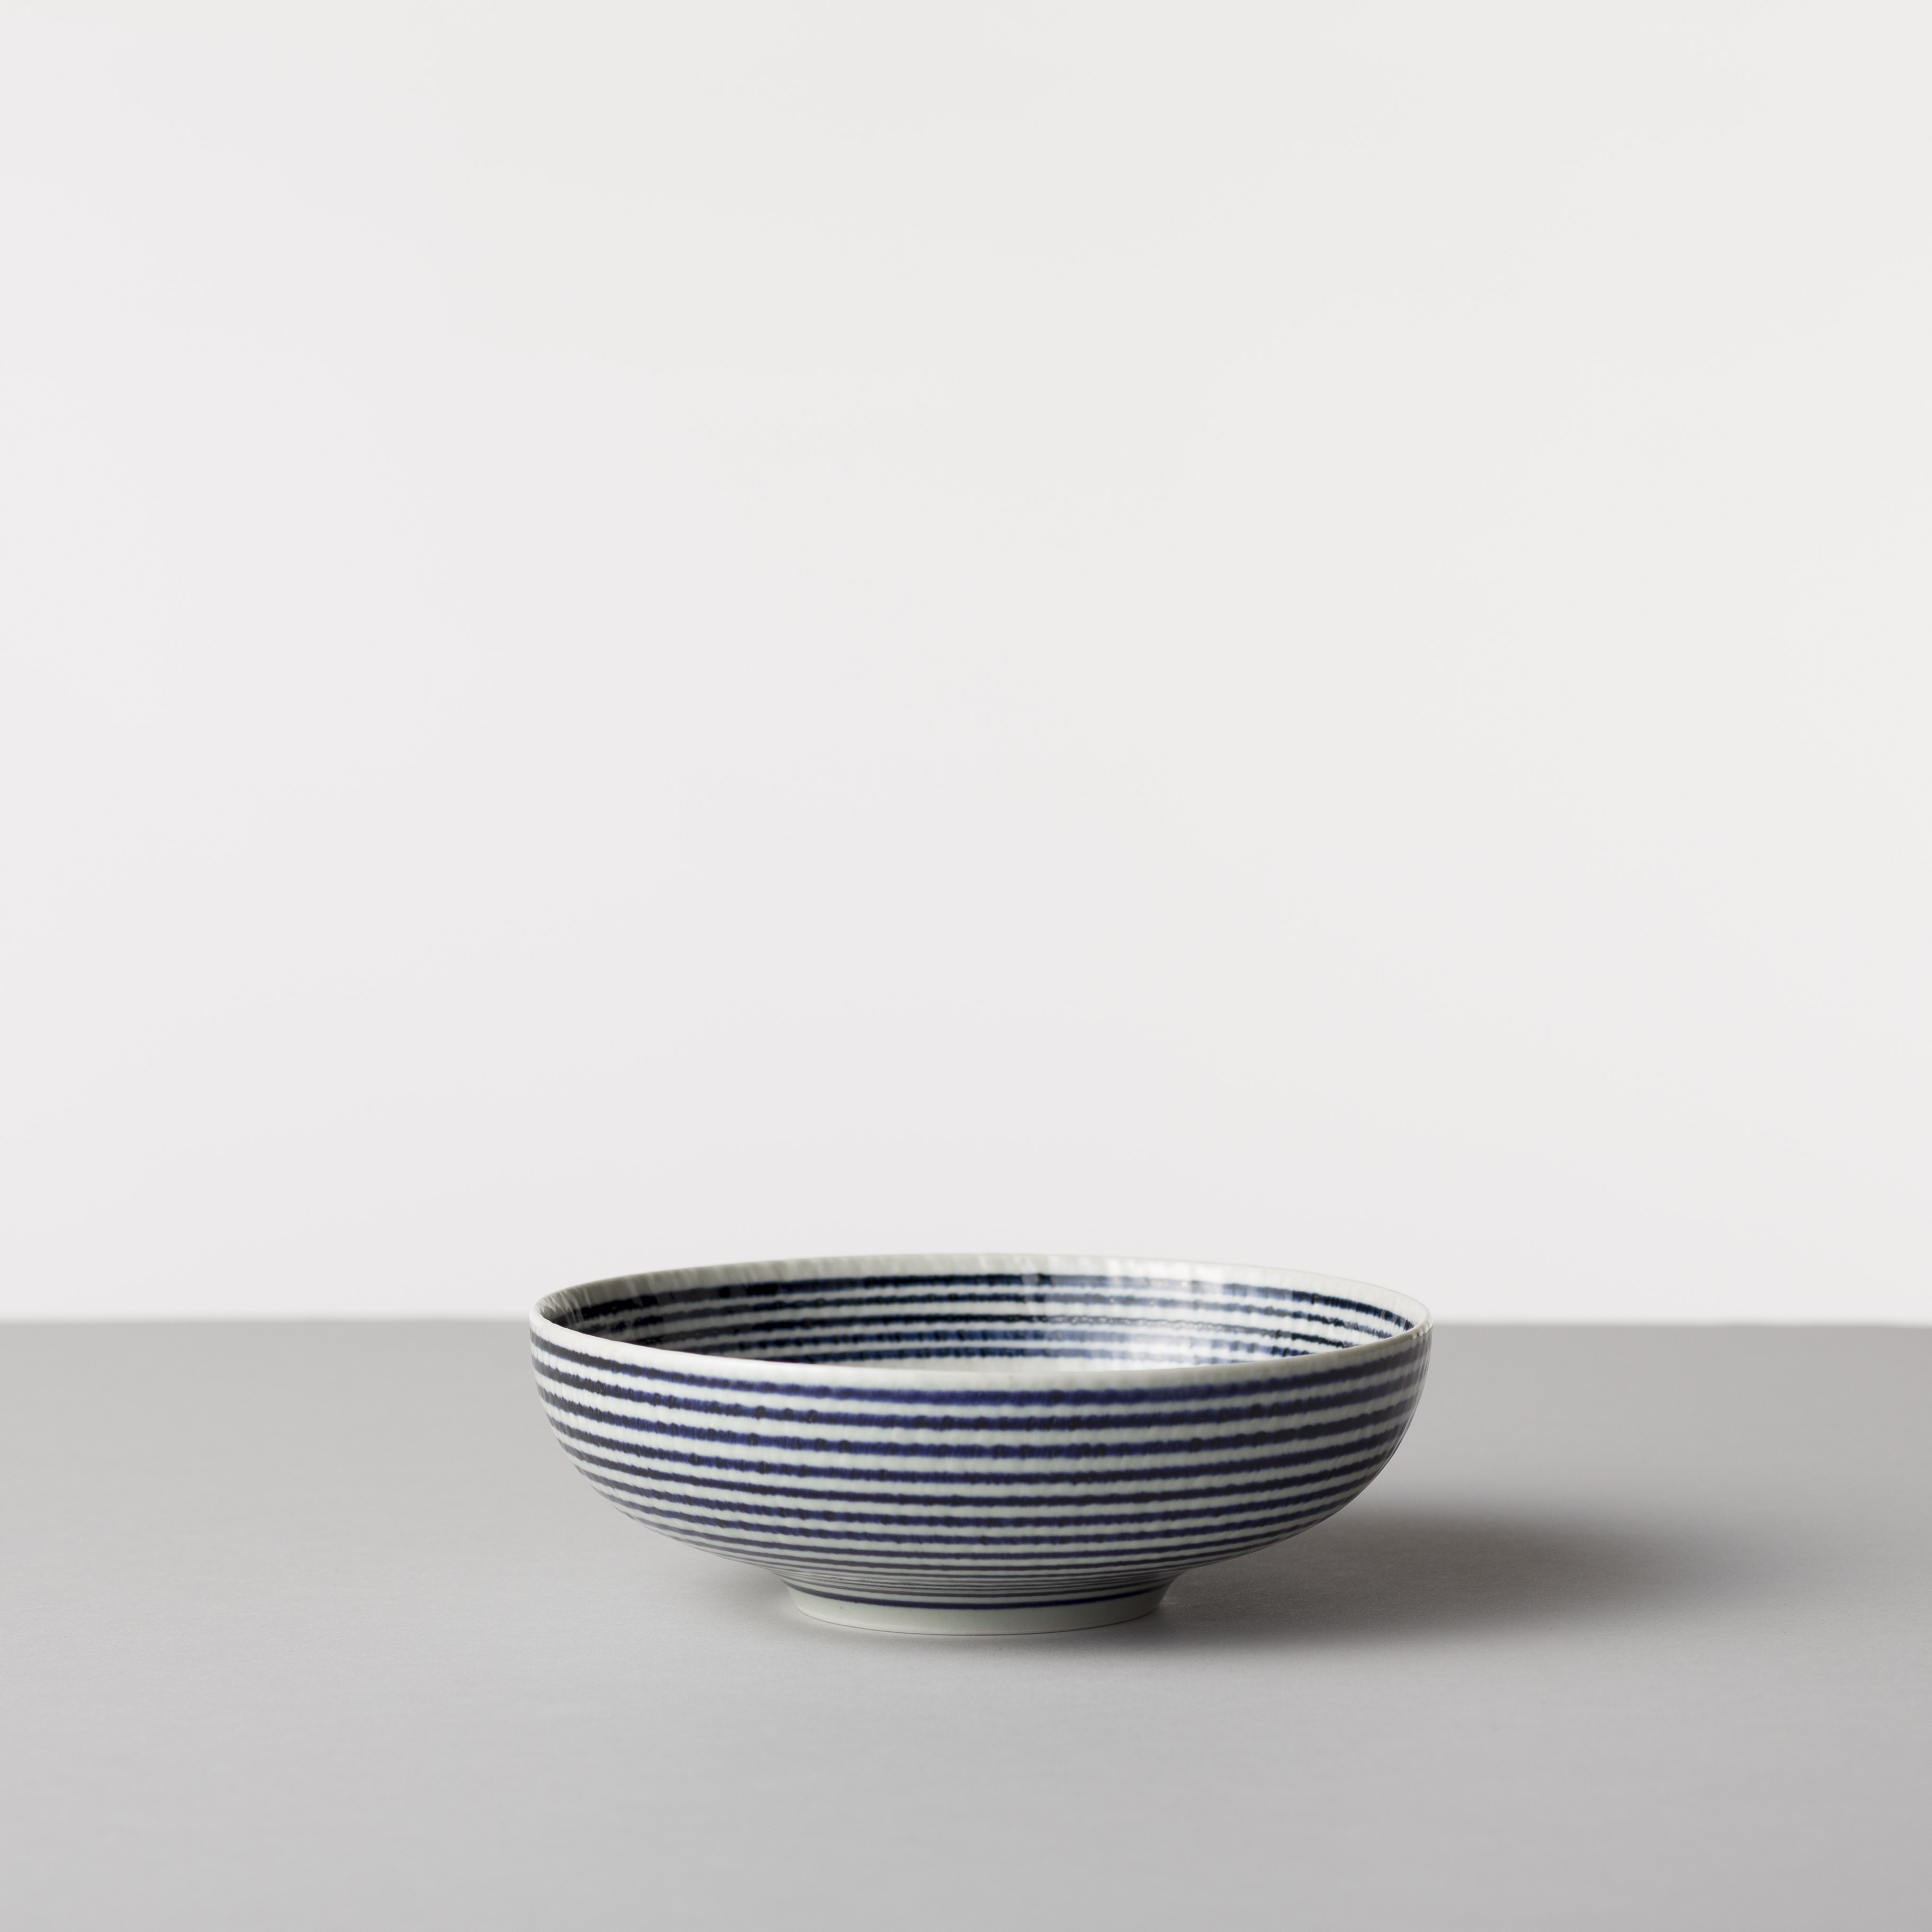 藍駒 大鉢 | 有限会社マルヒロ | 波佐見焼の陶磁器ブランド